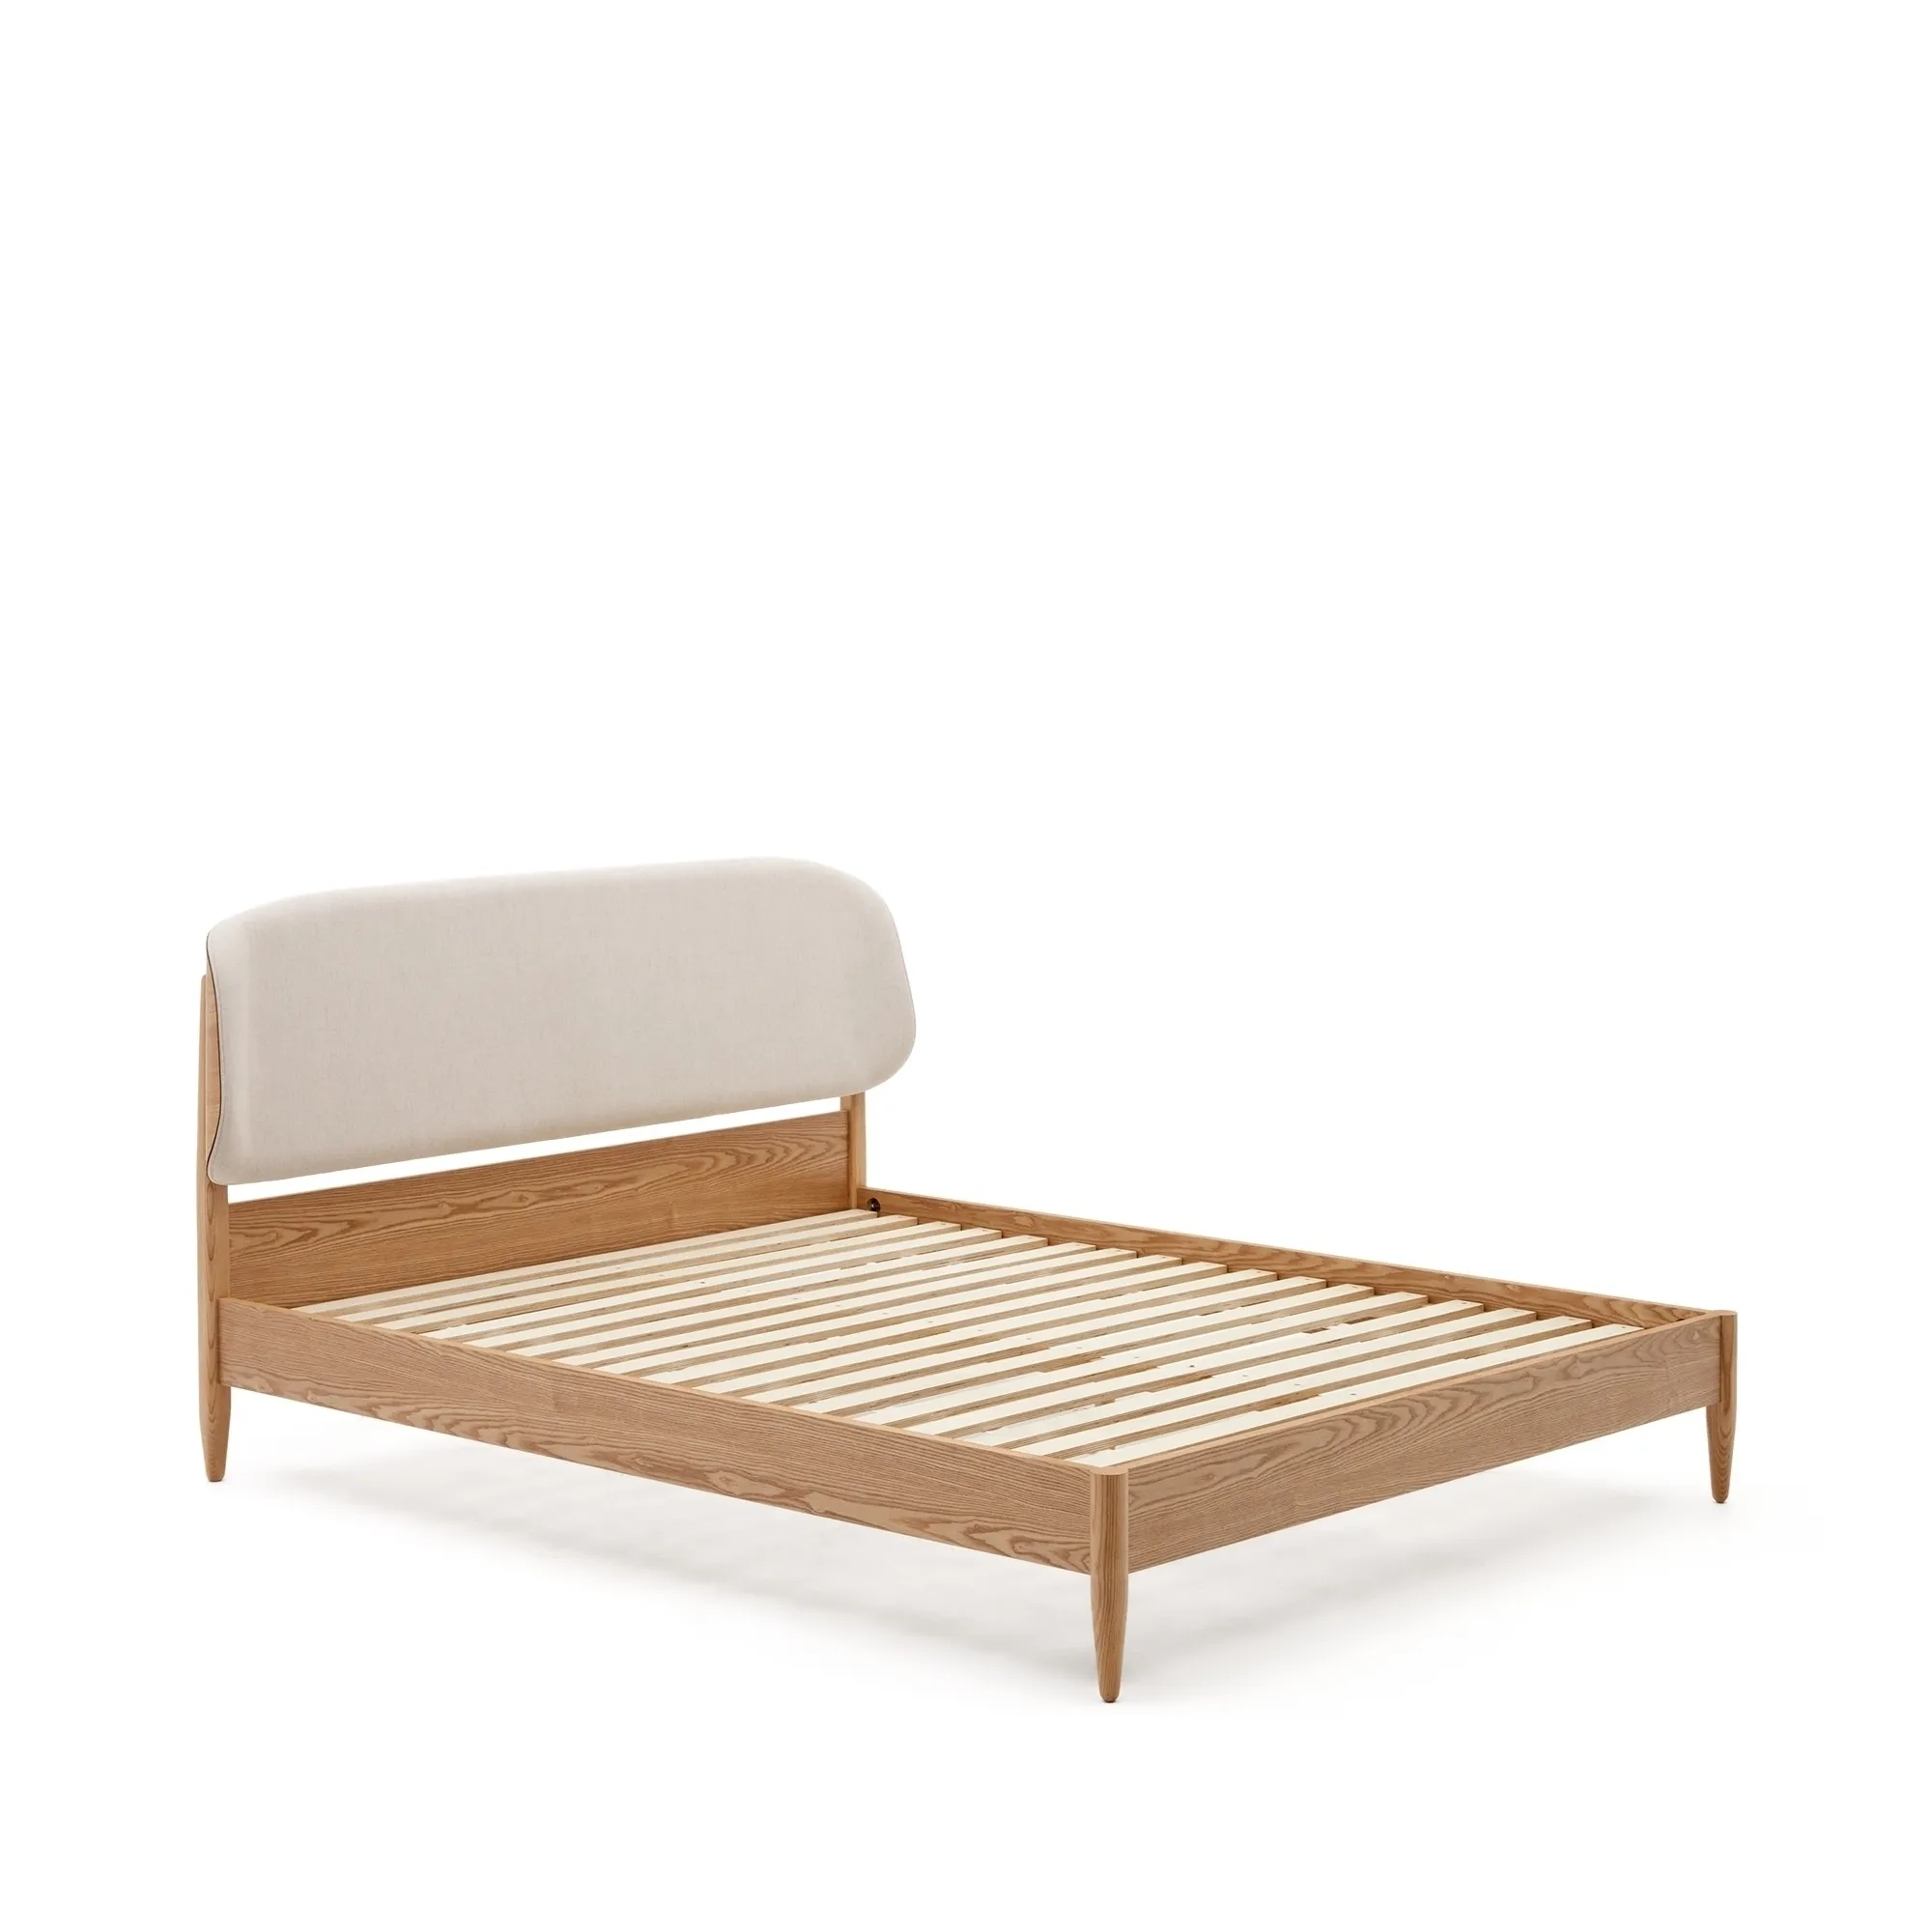 Двуспальная кровать La Forma Octavia ясень с белым мягким изголовьем 178342